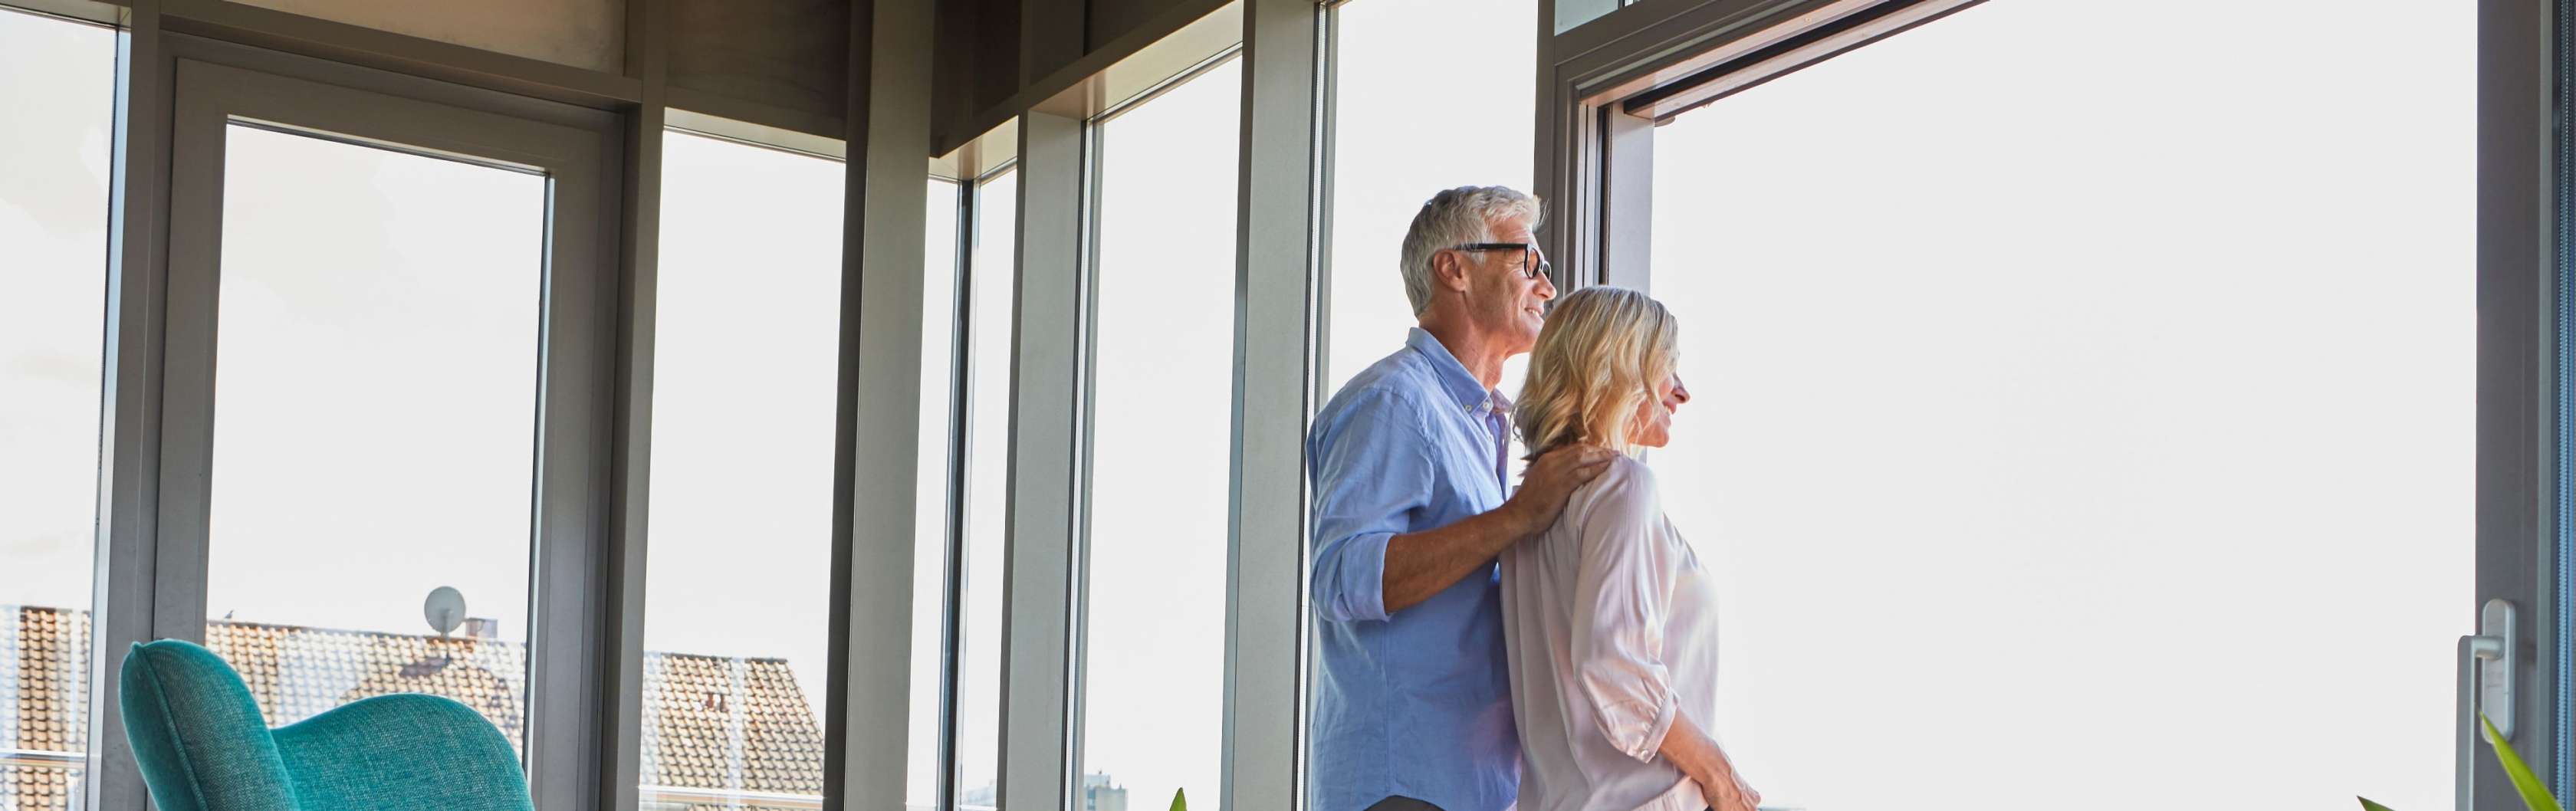 Sterbegeldversicherung Einmalzahlung - Ein Mann und eine Frau stehen im Haus vor einem Fenster und blicken gemeinsam nach draußen.